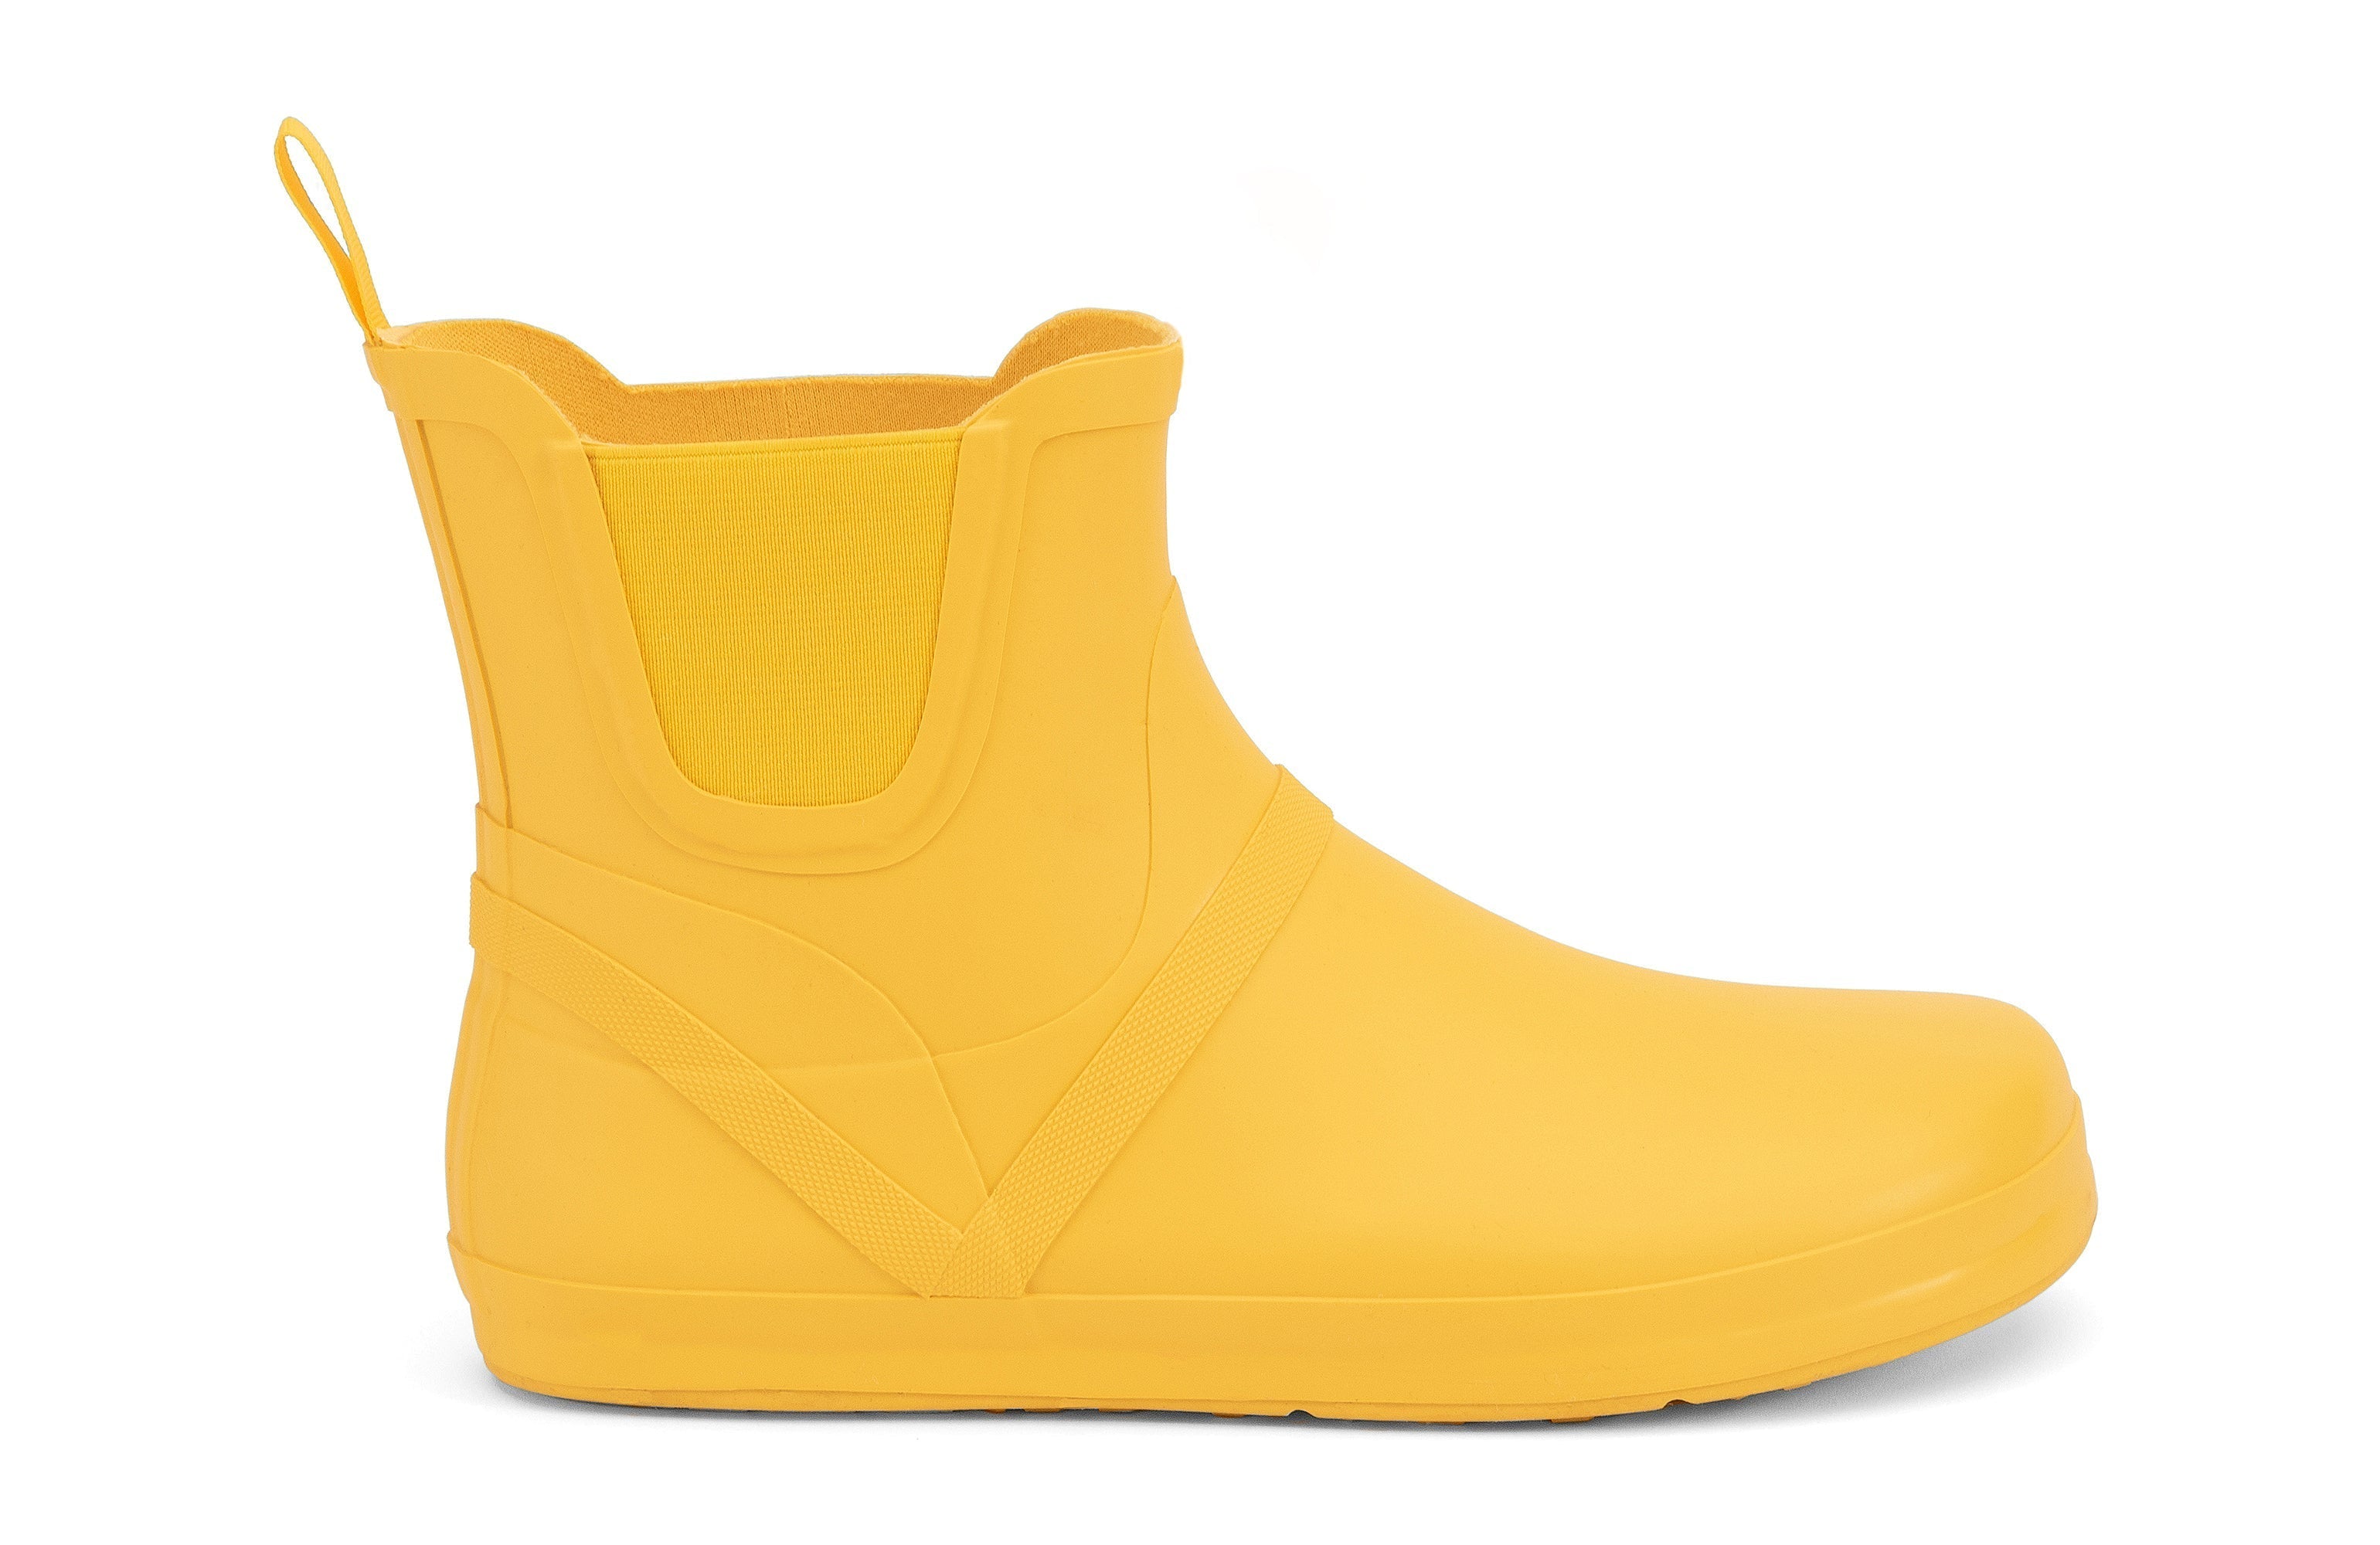 Xero Shoes Gracie barfods gummistøvler til kvinder i farven yellow, yderside